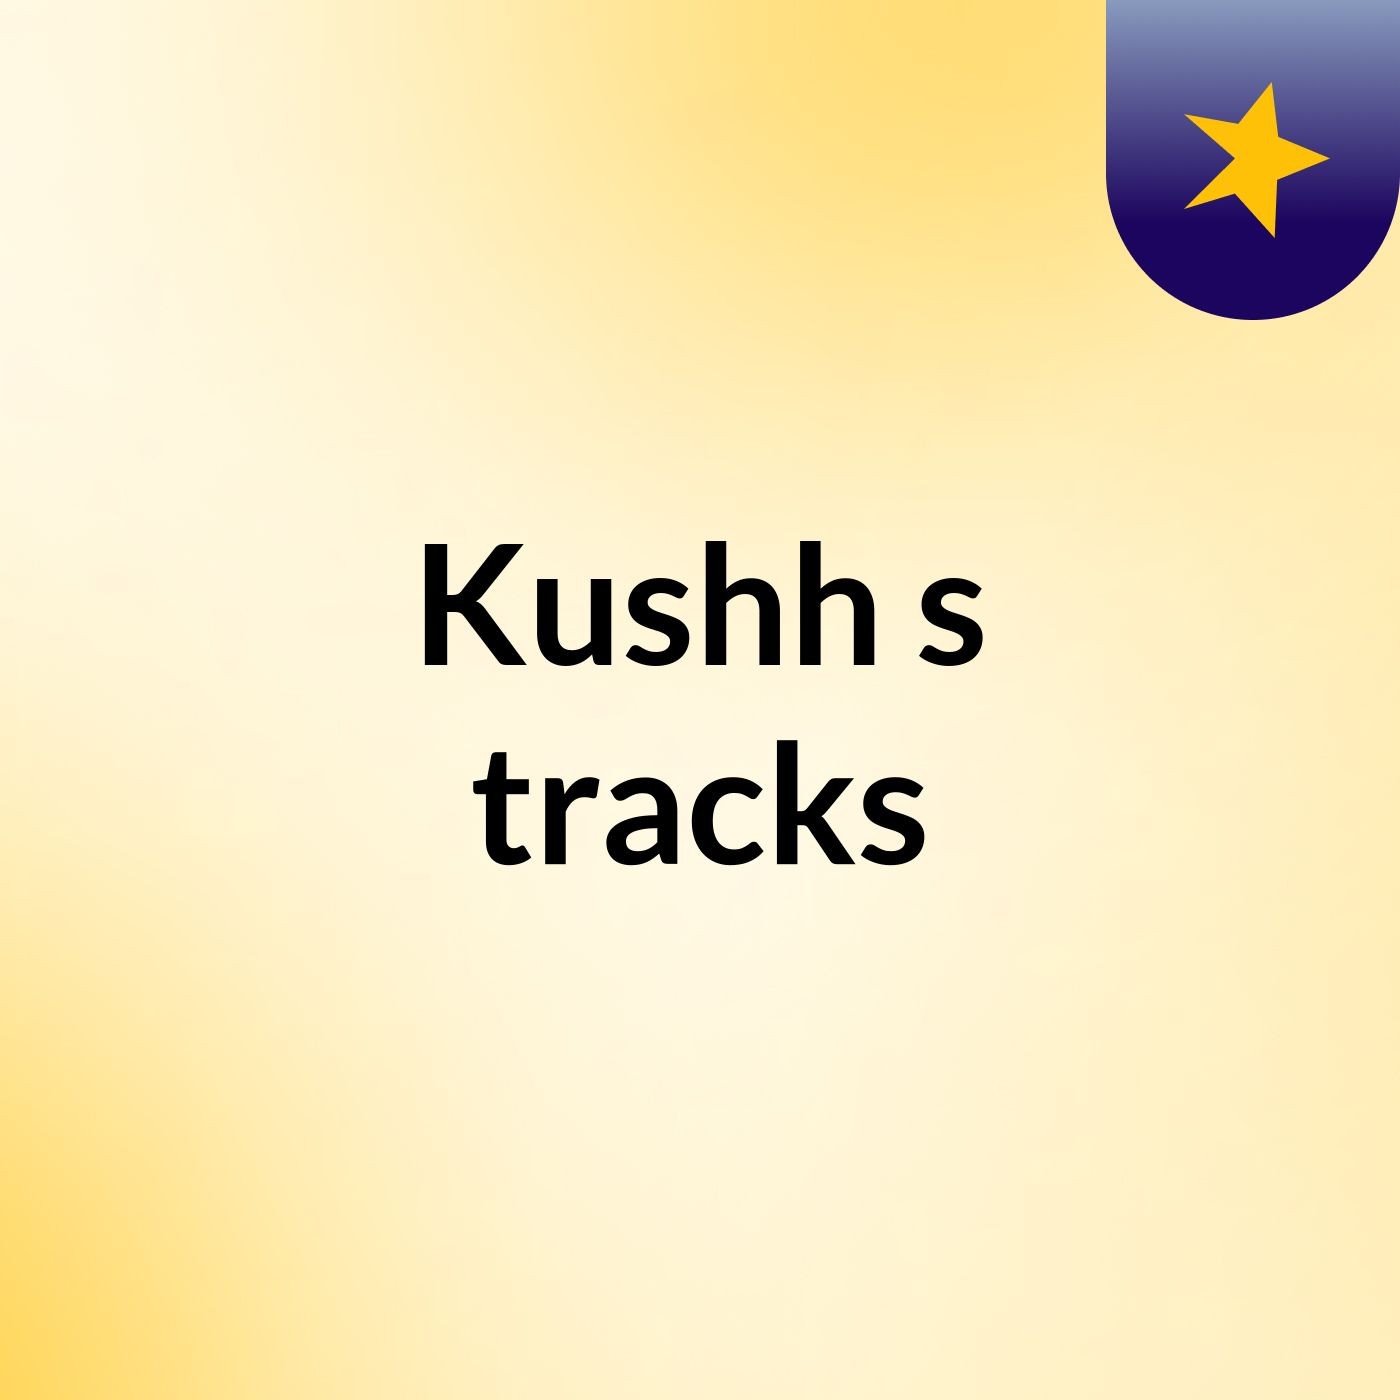 Kushh's tracks